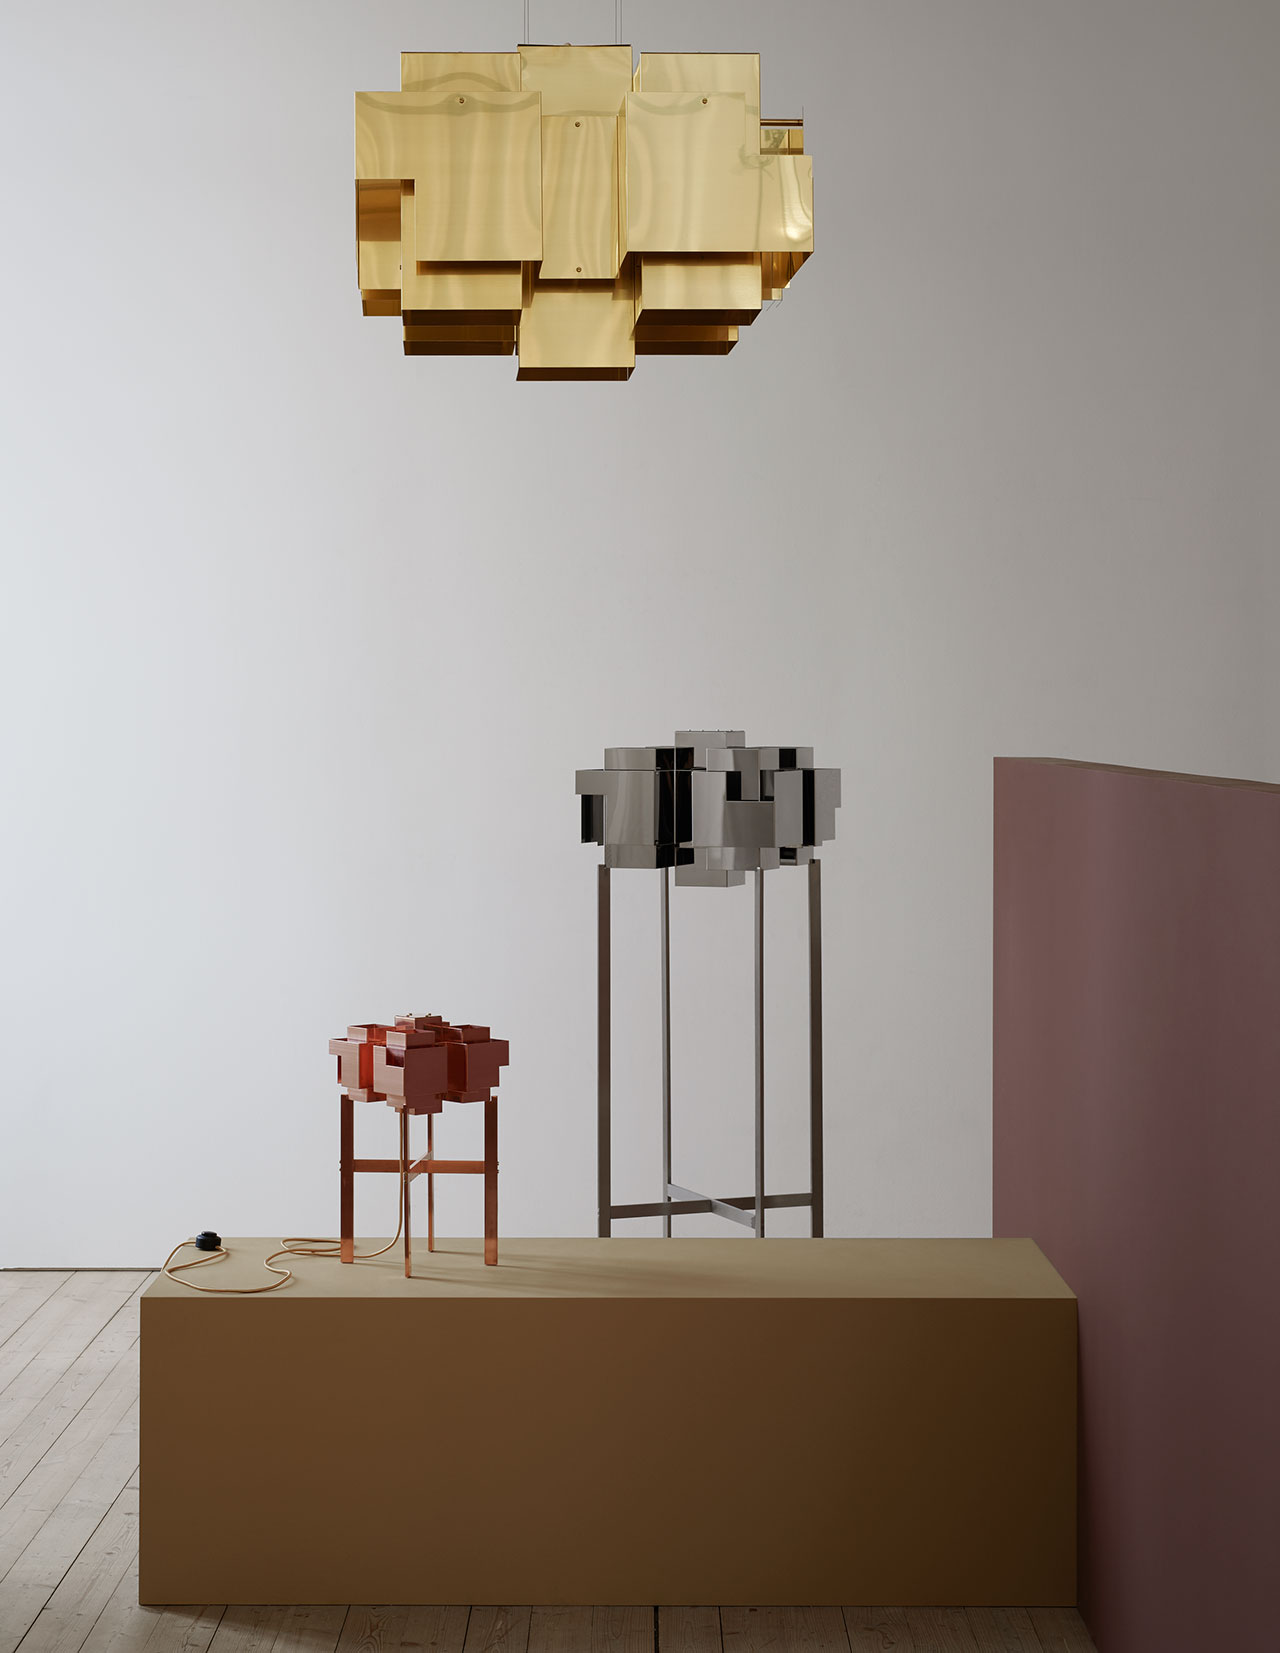 Lamp series Skyline, brass ceiling lamp, chrome floor lamp, copper table lamp, all by Folkform for Örsjö. Photo by Kristofer Johnsson.